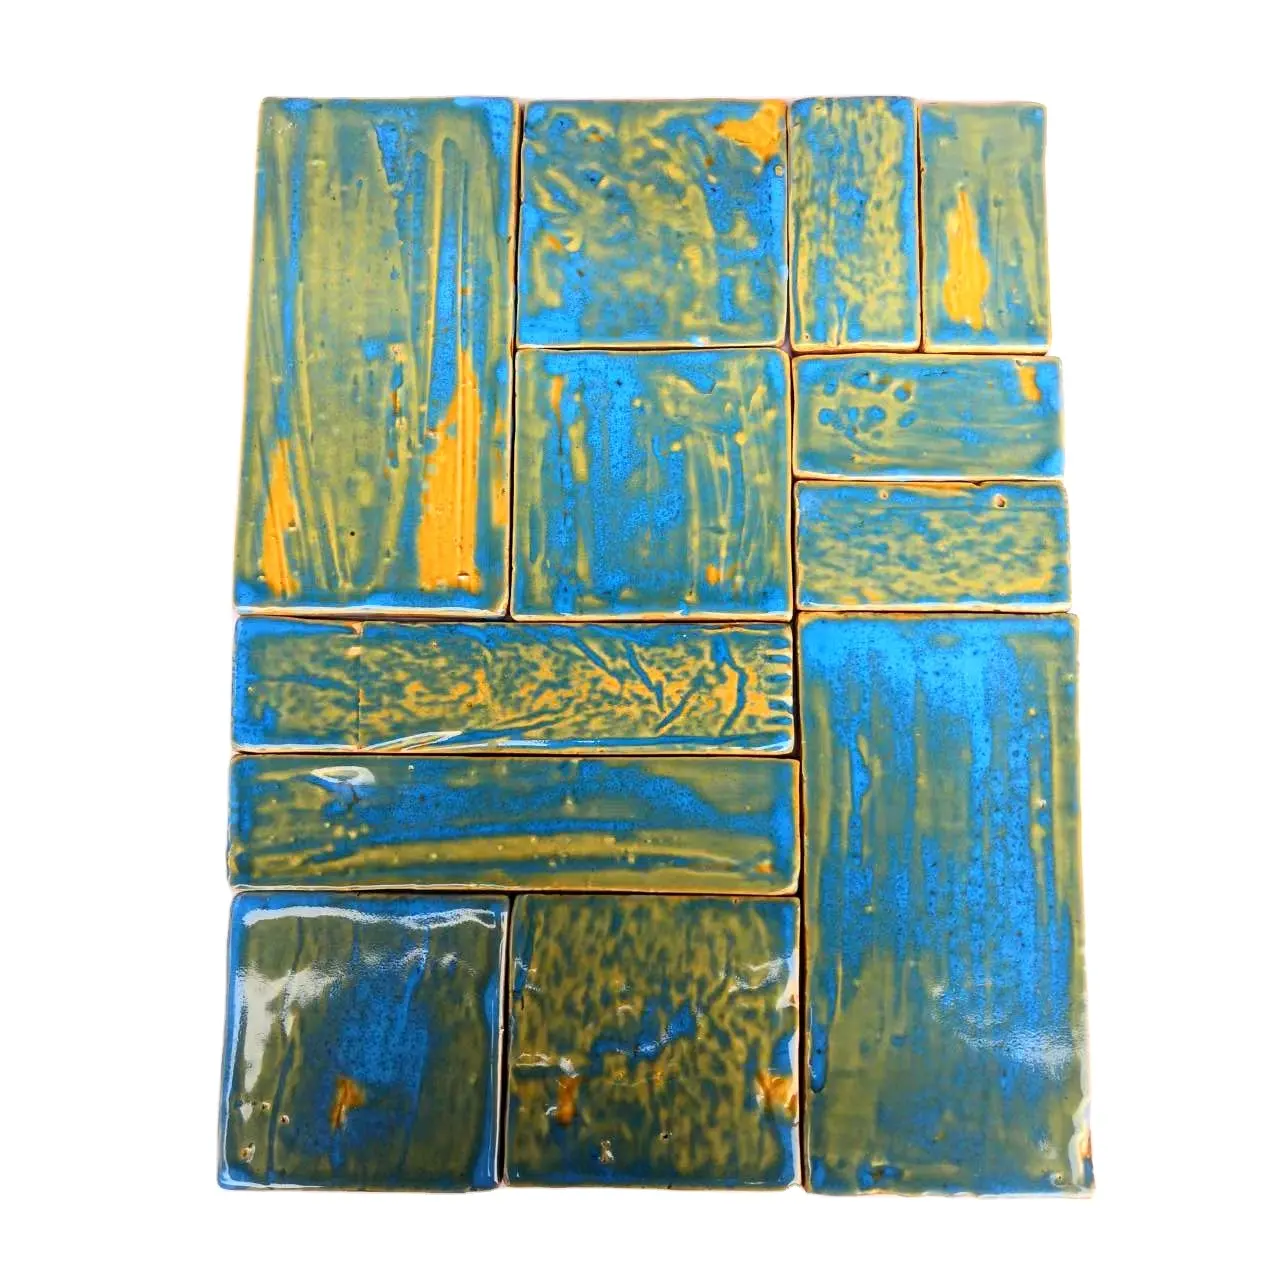 بلاطات زيليج زرقاء مصنوعة يدويًا 4×4 بوصة / 10×10 من المصنع، بلاطات جدران المطبخ والحمام 10×20 سم، بلاطات فاخرة لغرف الفنادق وللتزيين المغربي